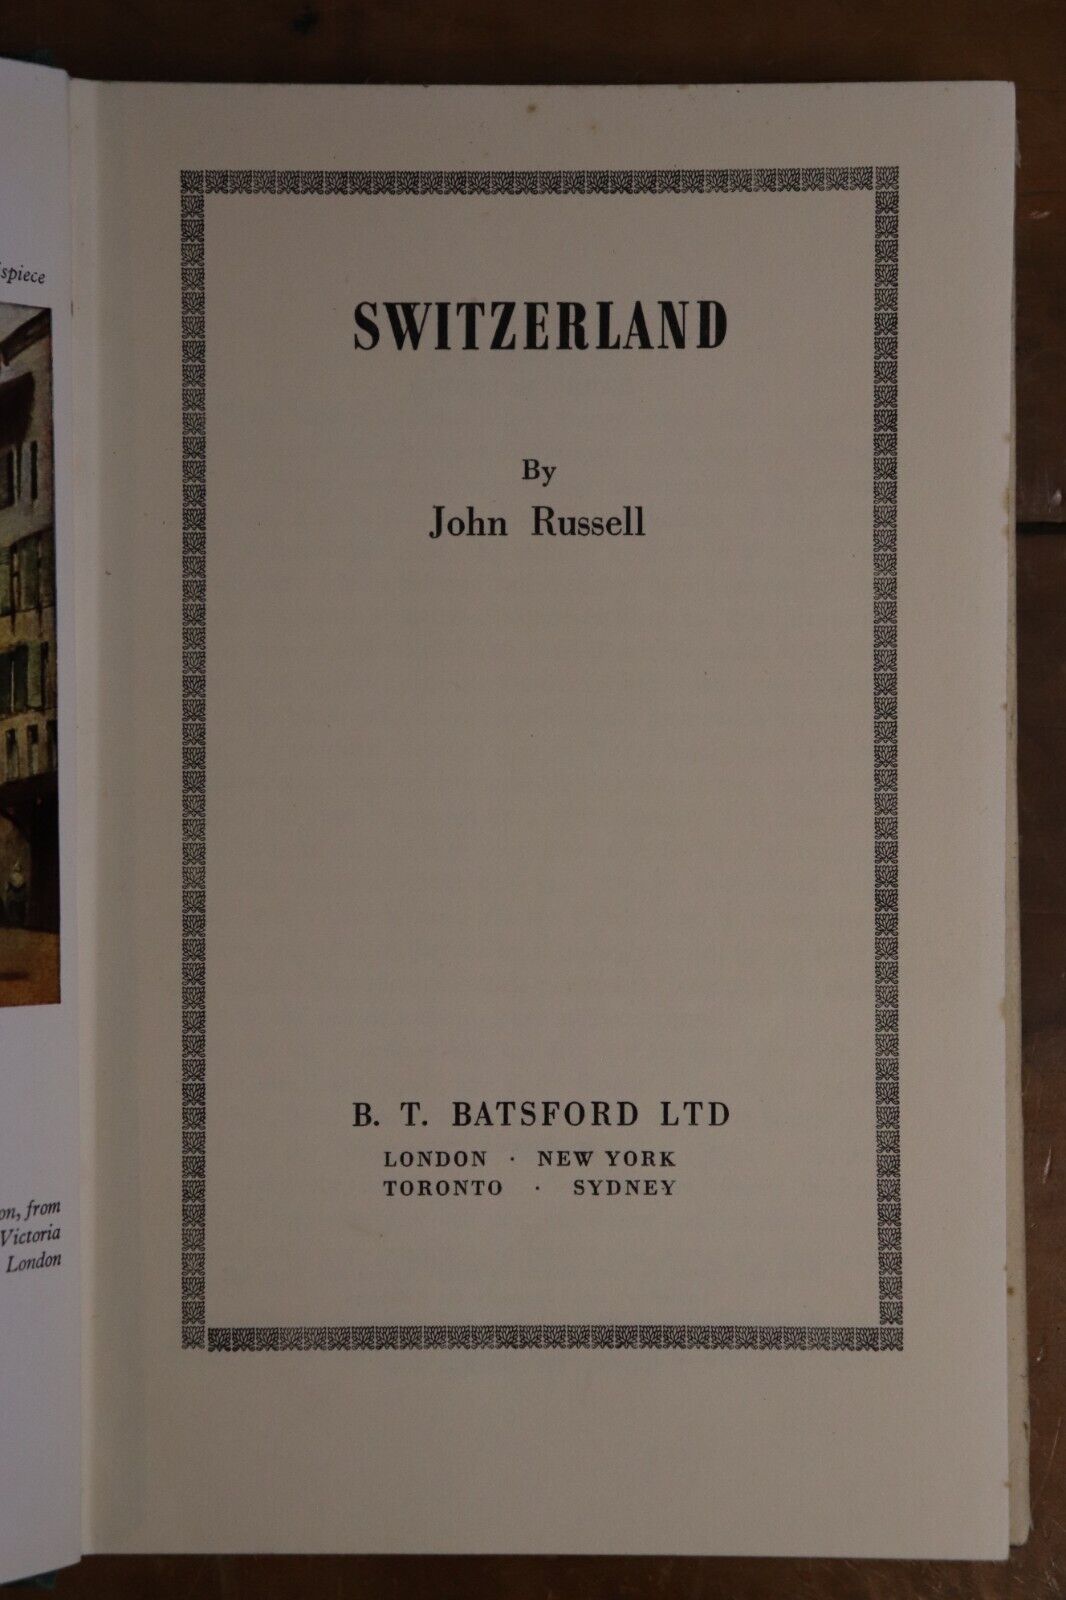 Switzerland by John Russell - BT Batsford - 1950 - Antique Travel Book - 0